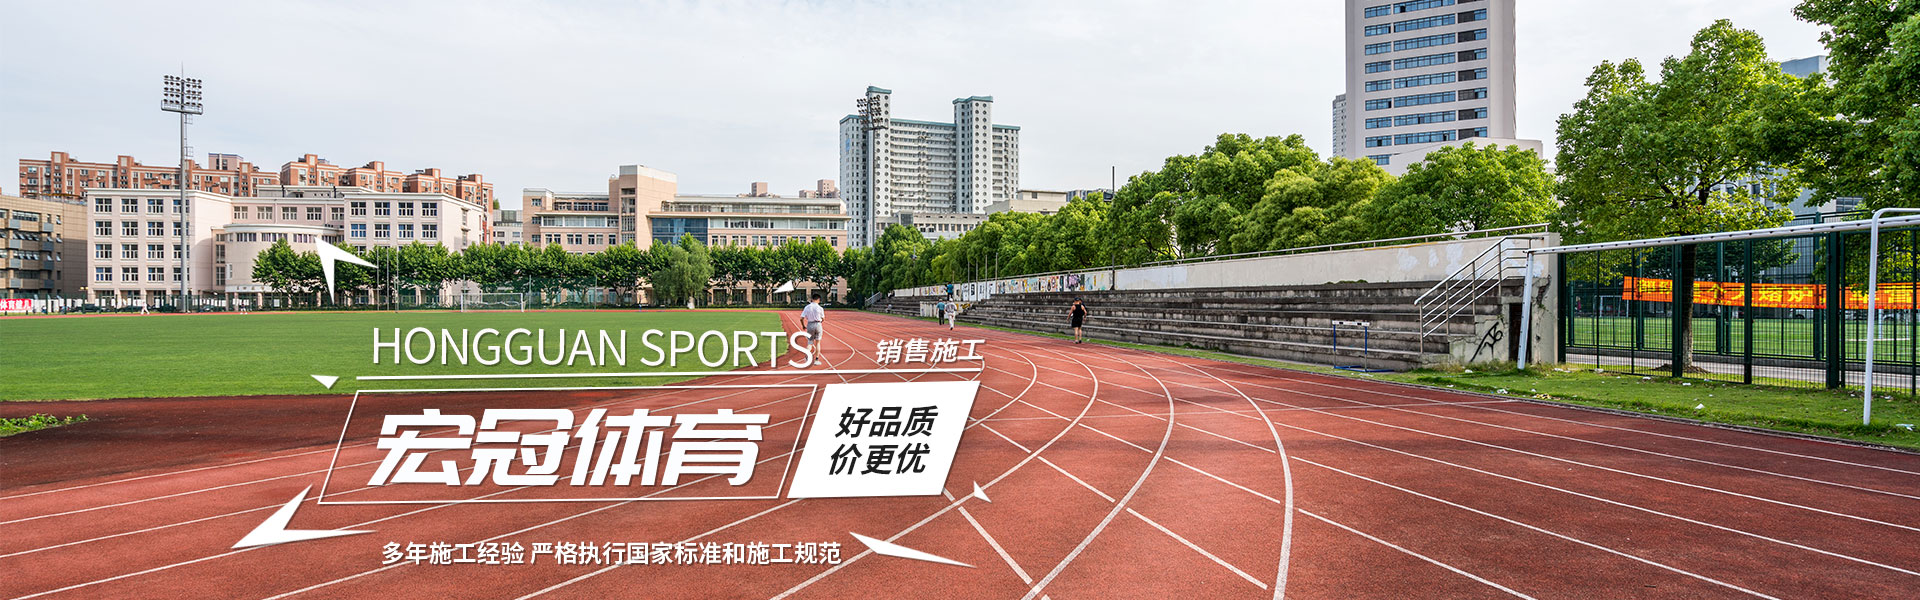 天博tb·体育综合(中国)官方网站-登录入口